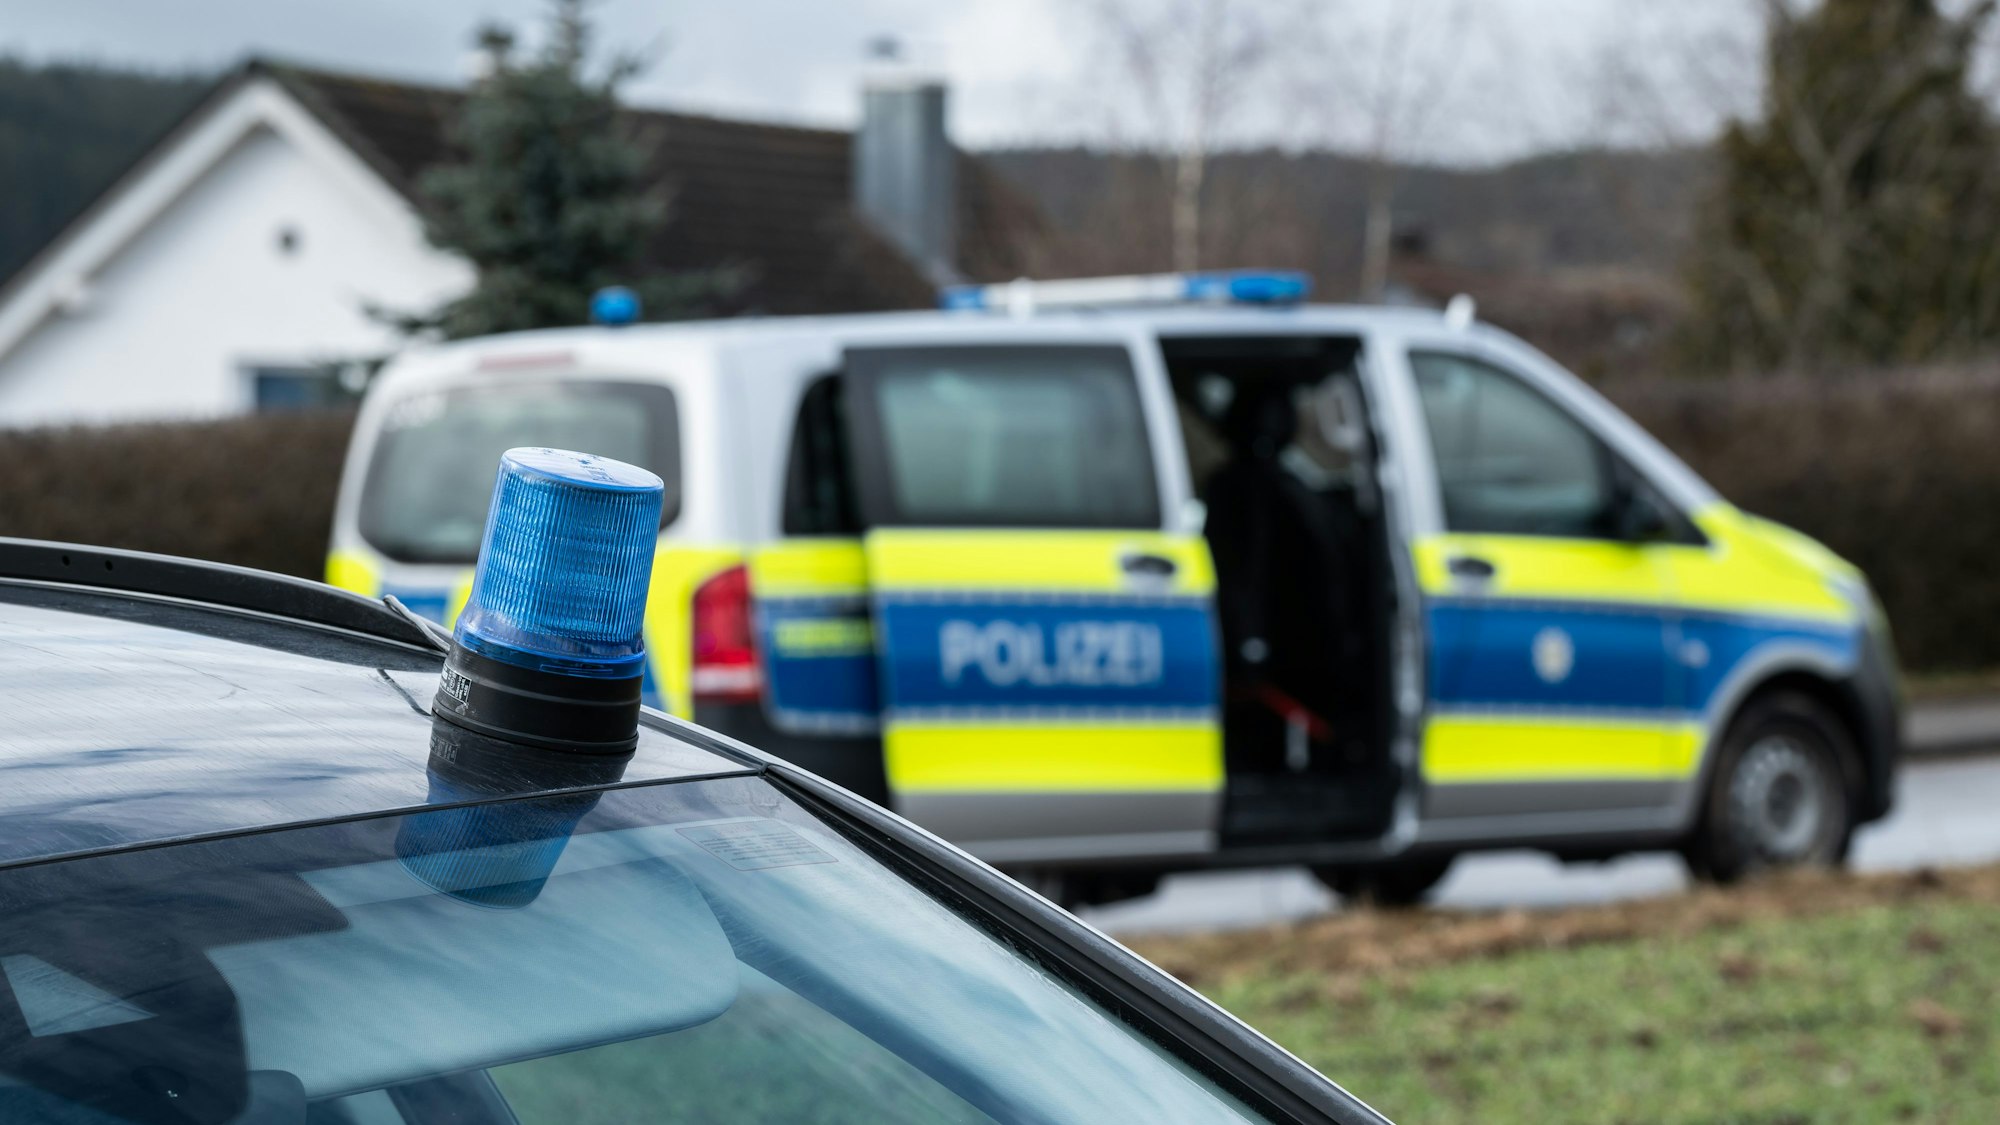 Einsatzfahrzeuge der Polizei stehen mit Blaulicht bei einem Wohngebiet (Symbolfoto).